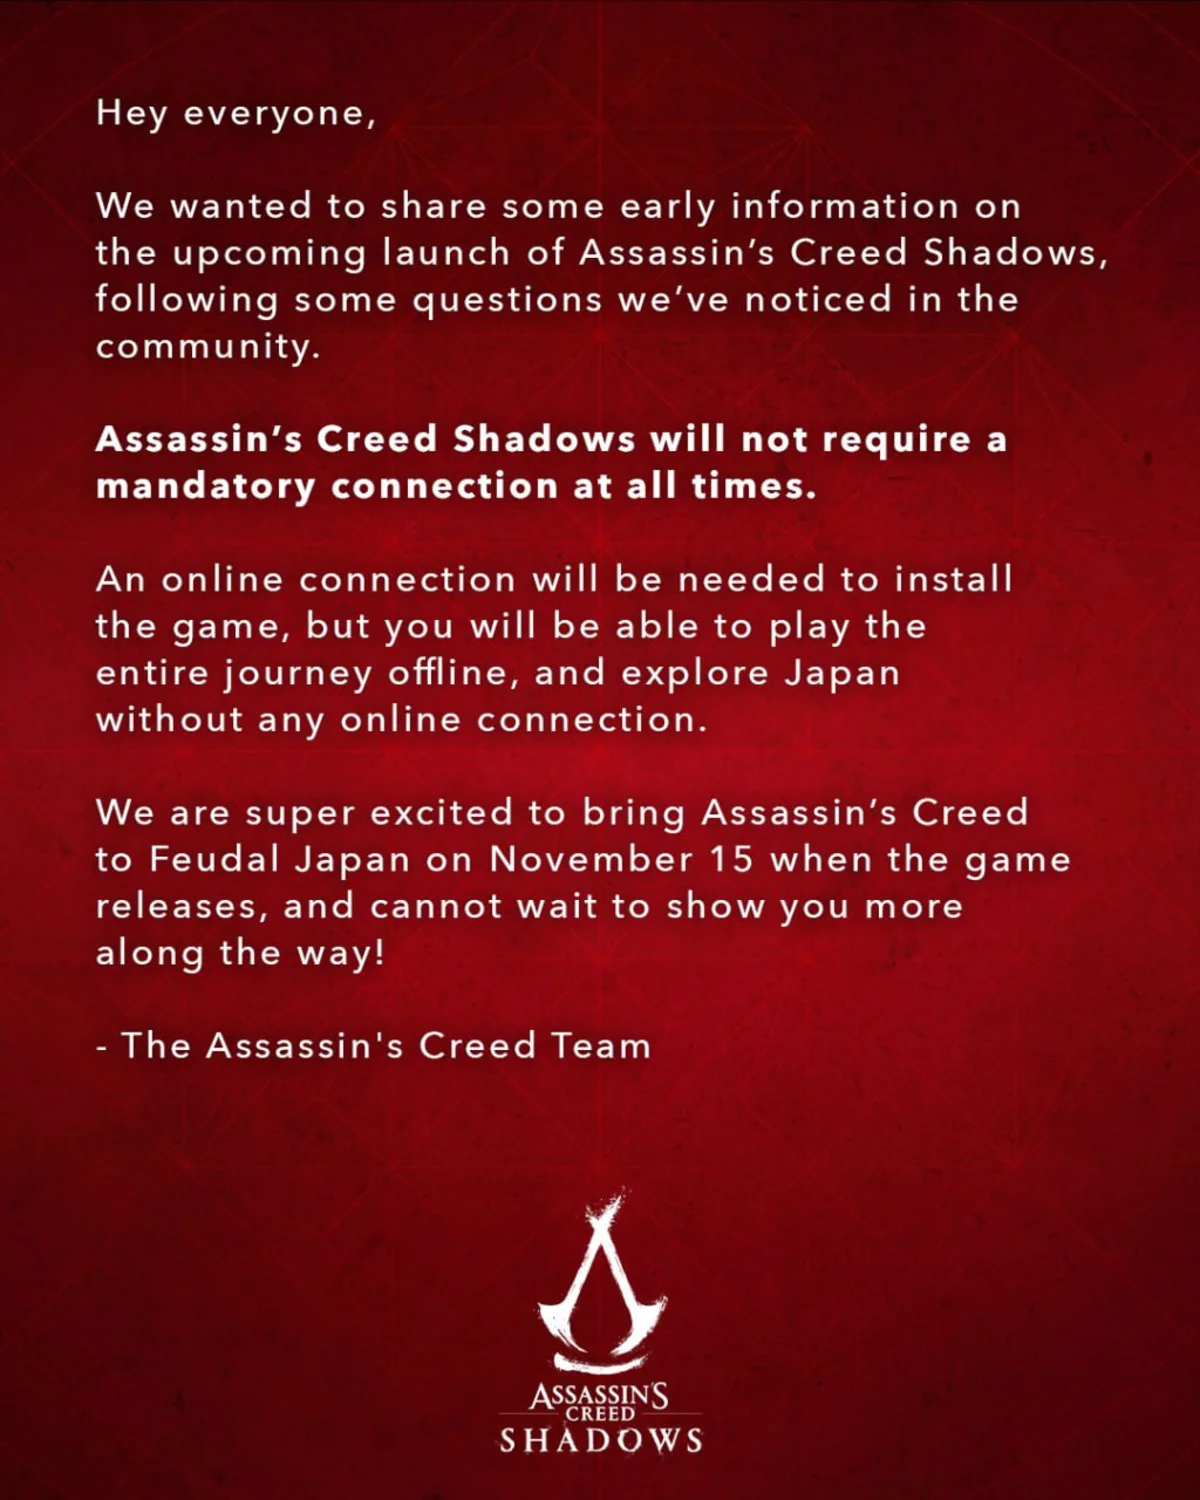 Assassins Creed Shadows не будет требовать постоянного подключения к сети - фото 1